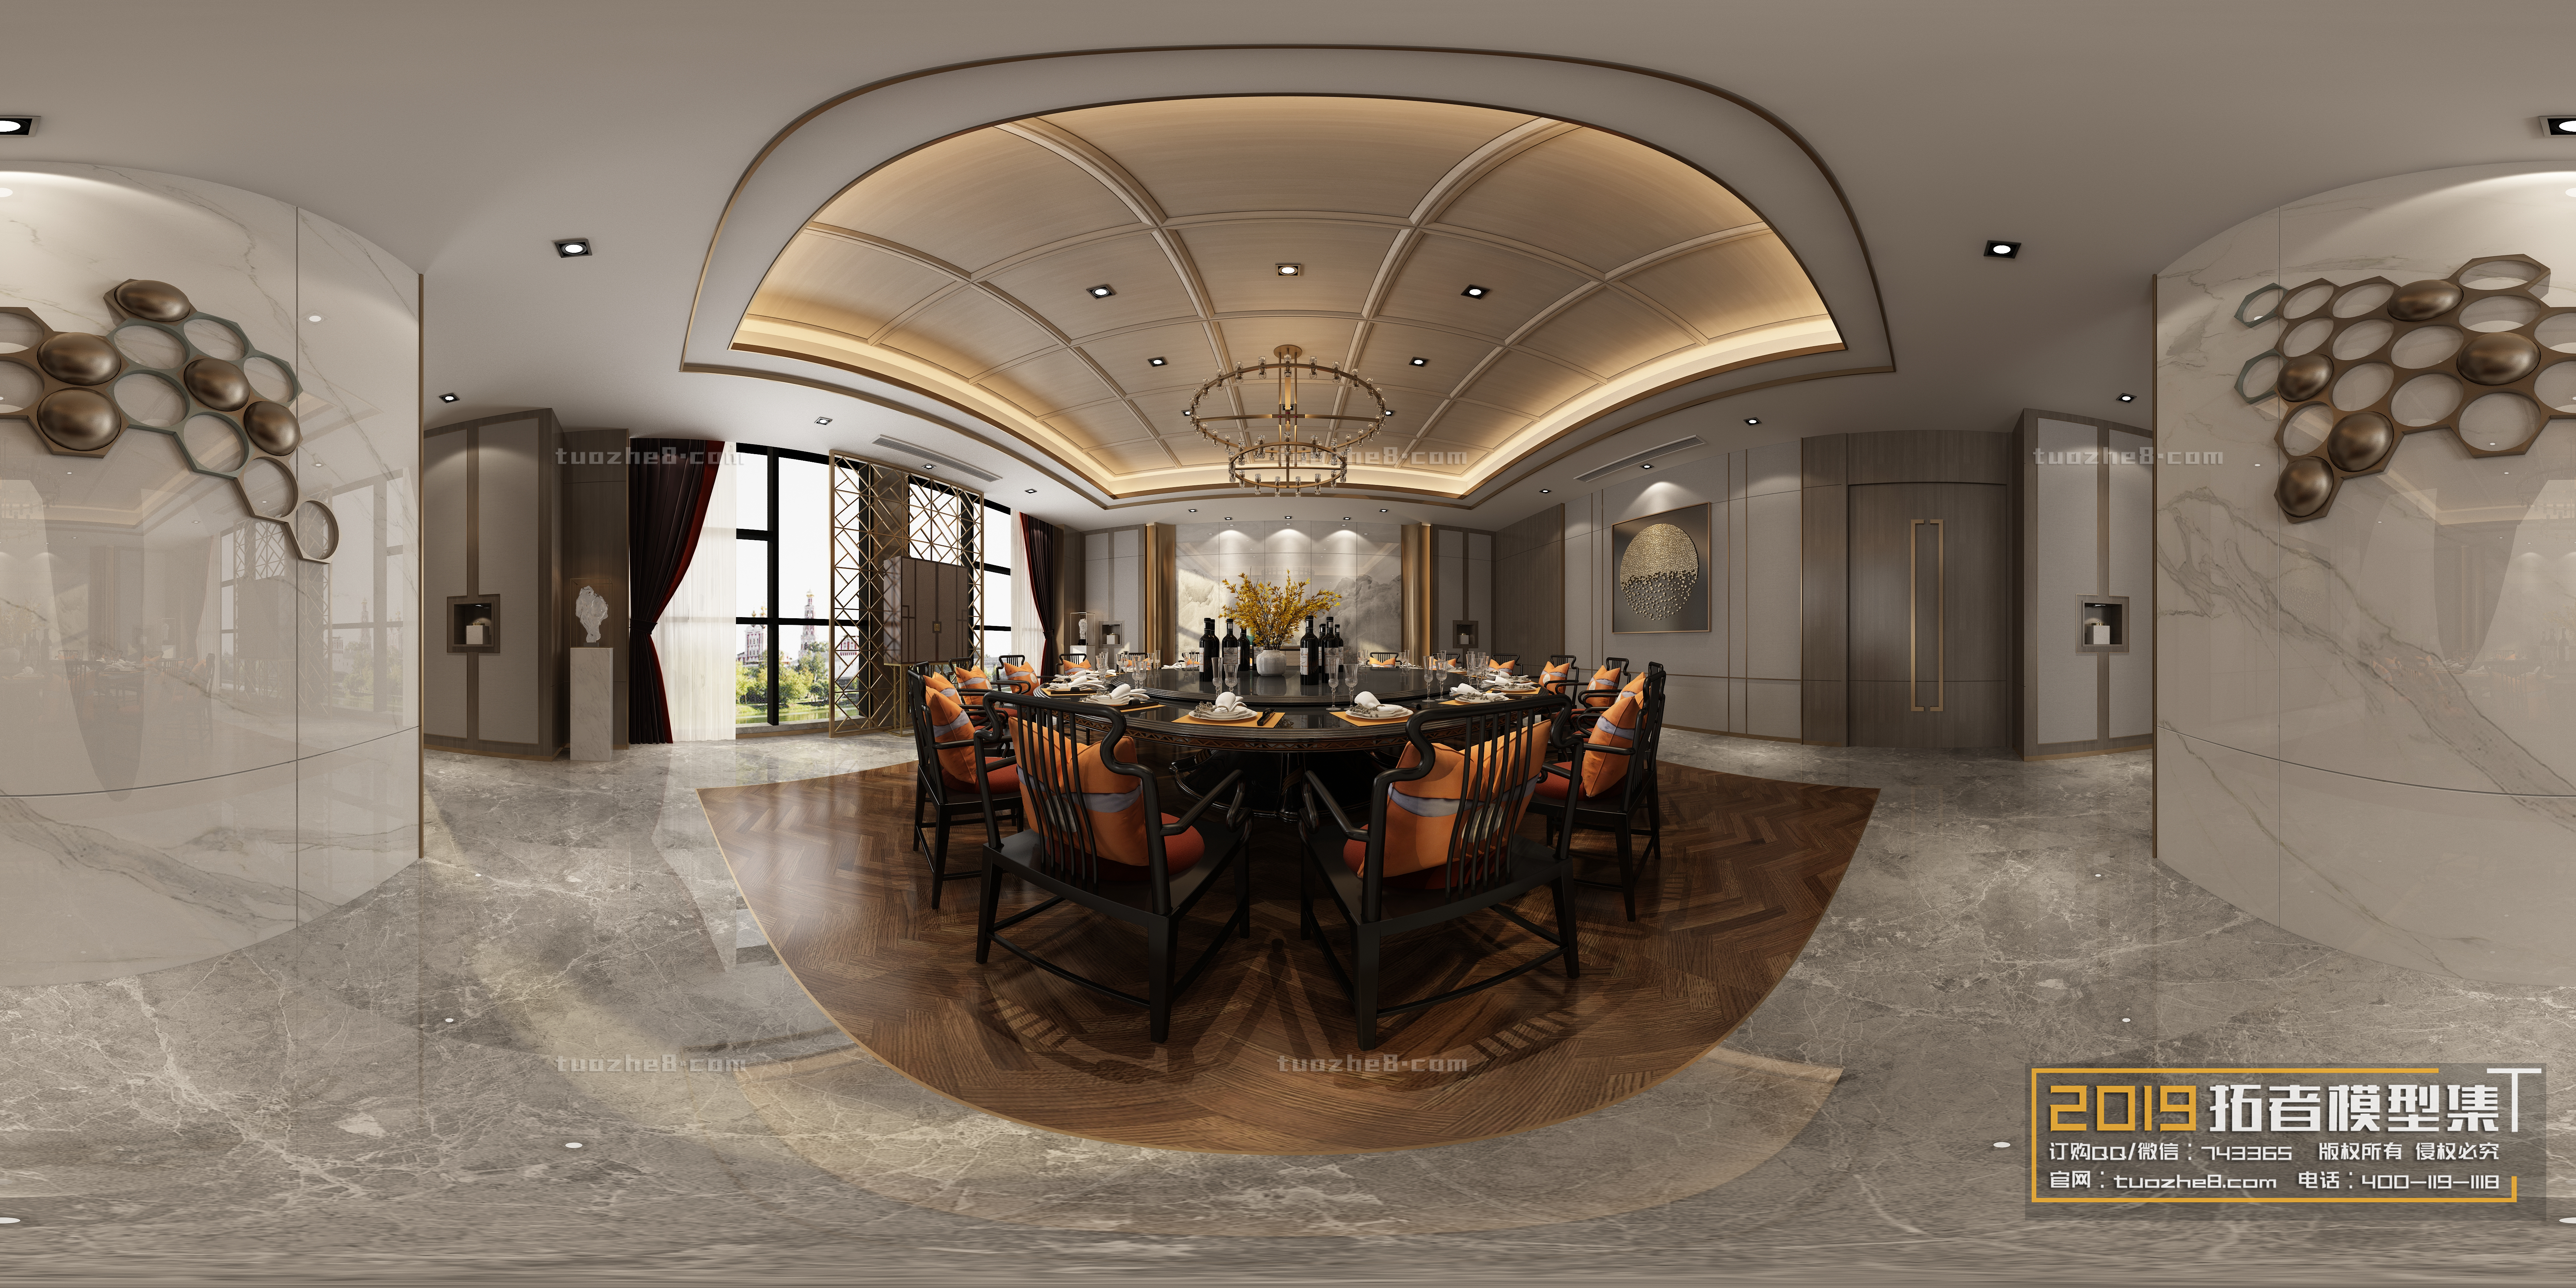 Extension Interior – RESTAURANT DINING – 035 - thumbnail 1